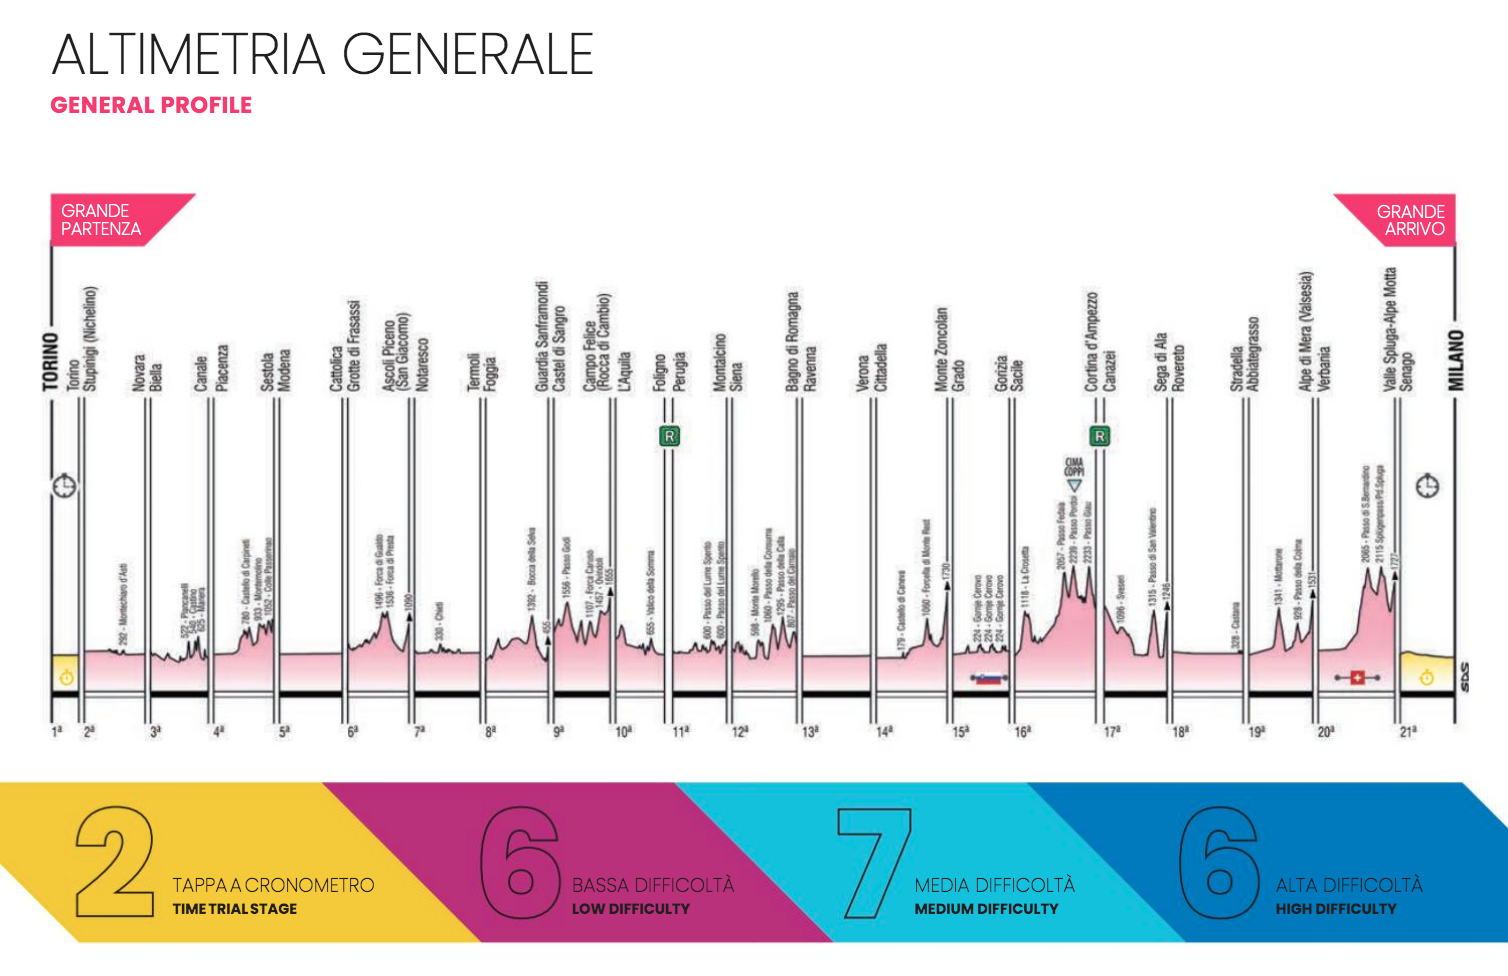 環義賽道充滿挑戰及危險性，今年賽道設定特別分出低、中、高難度並且說明比例分配。（圖片來源：Giro d’Italia Official Website）